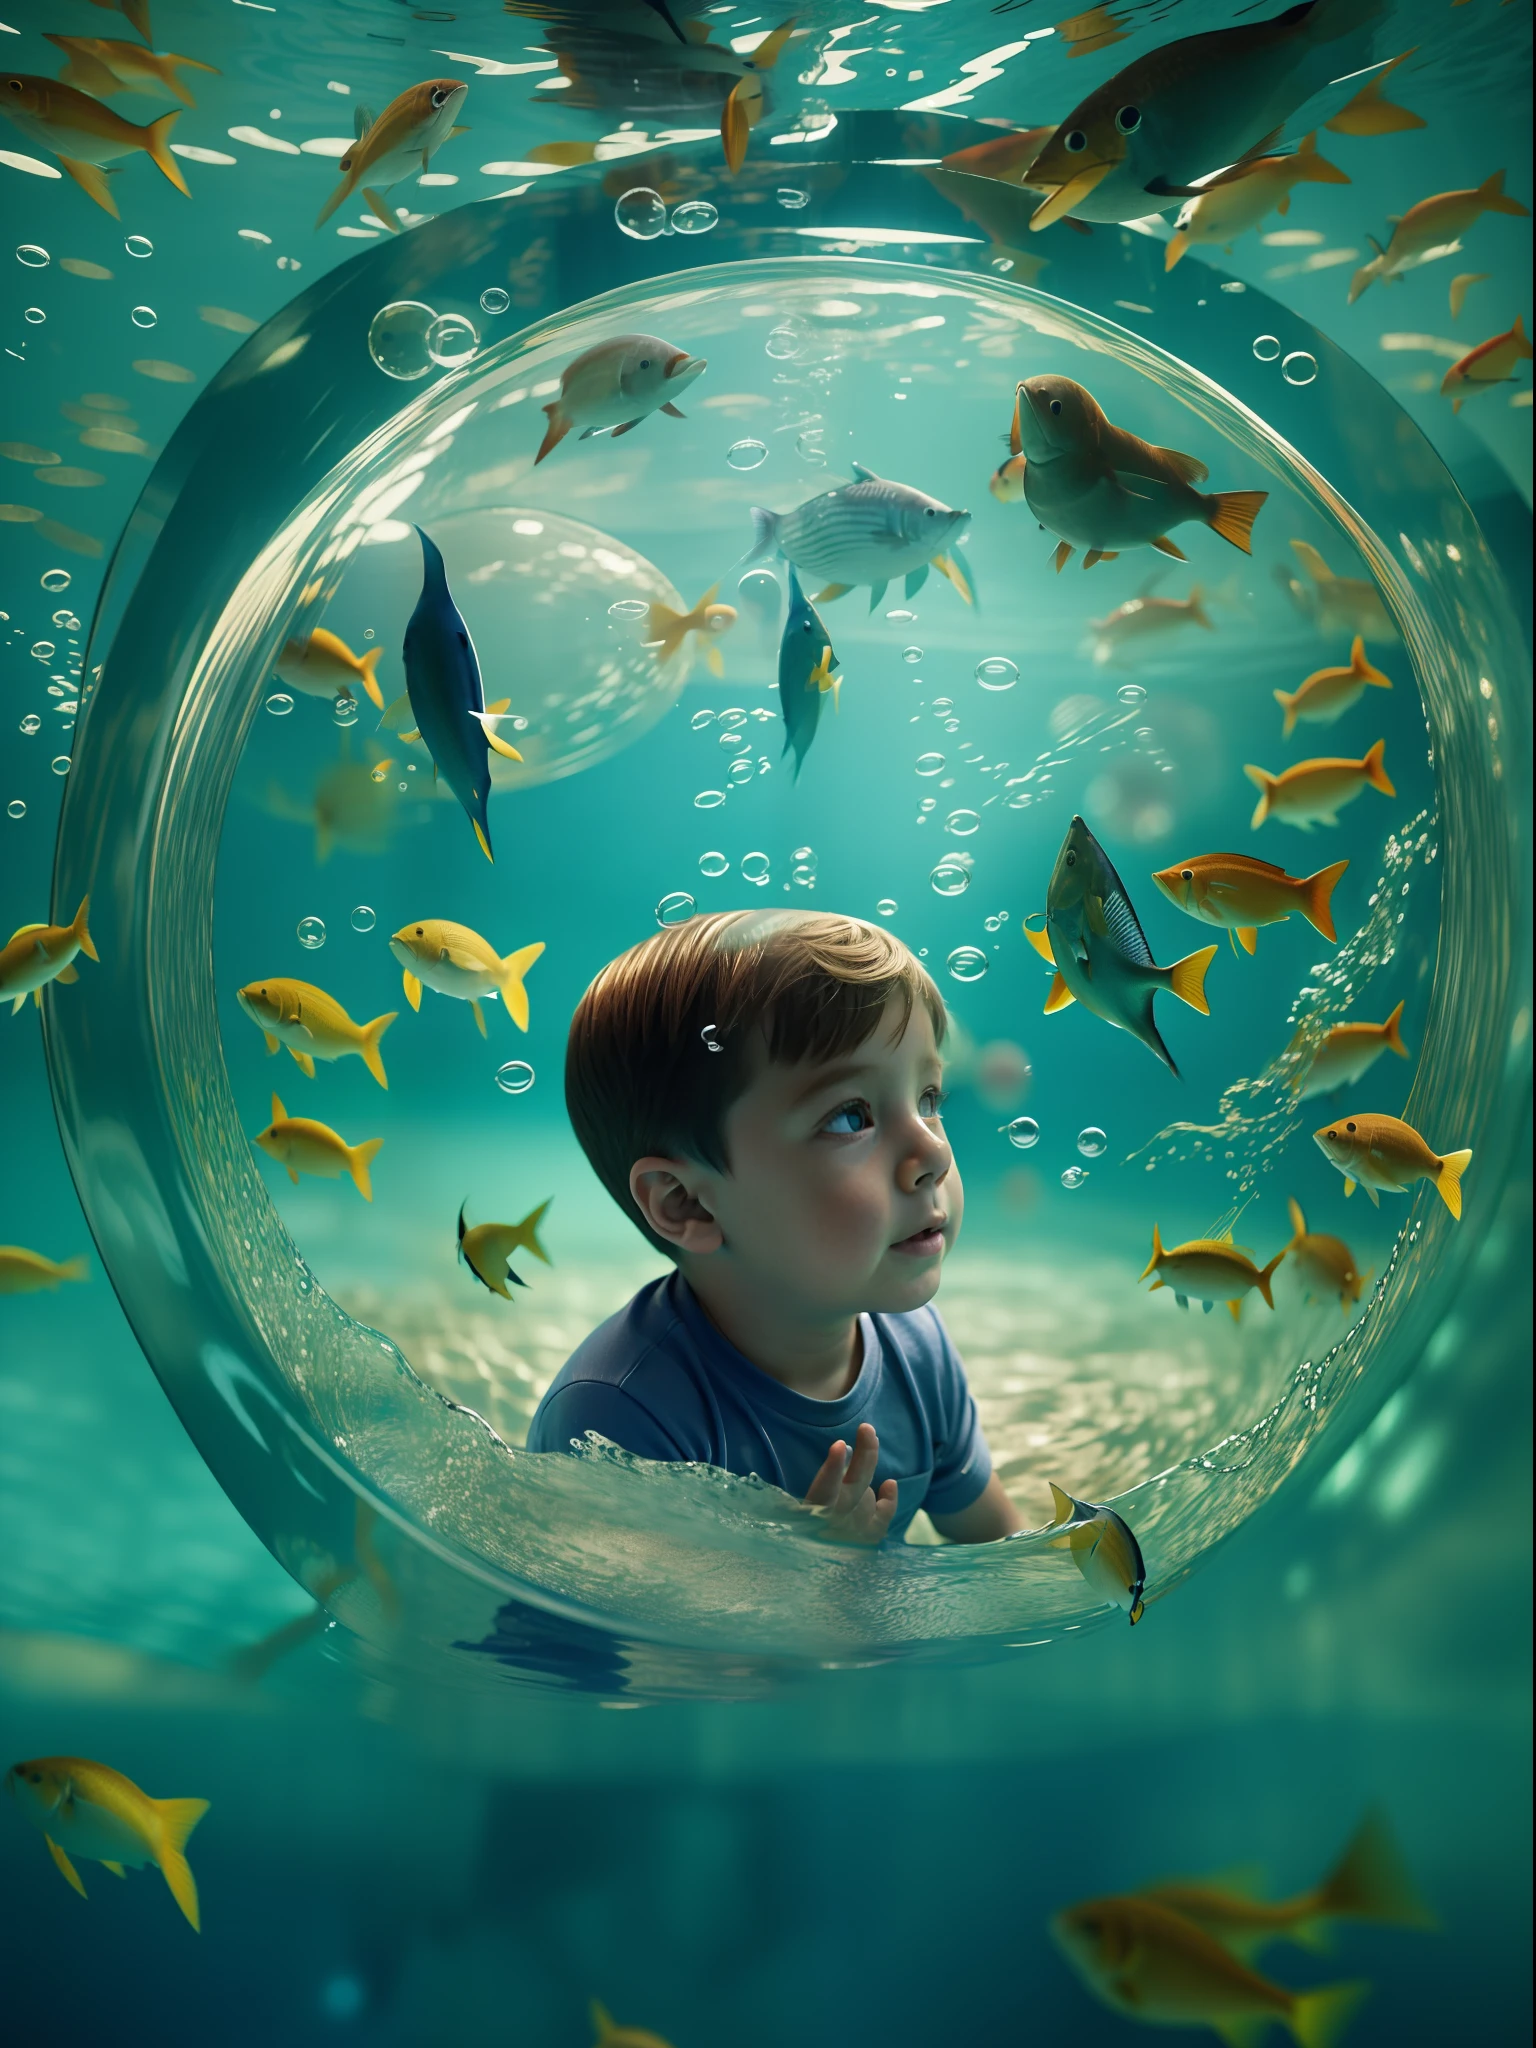 Eine Unterwasserszene, in der Fische fliegen und Vögel schwimmen, im Stil von René Magritte, Ein Kind schaut verwundert aus seiner Blase zu, High-Key-Beleuchtung,Flüssiges Wismut,Unterwasserhöhle,Nahaufnahme des Kindes inmitten dieser surrealen Szene, Gerendert von Alec Soth mit Unreal Engine 5, Luminismus, Filmische Beleuchtung, Retina, strukturierte Haut, Anatomisch korrekt, beste Qualität, preisgekrönt